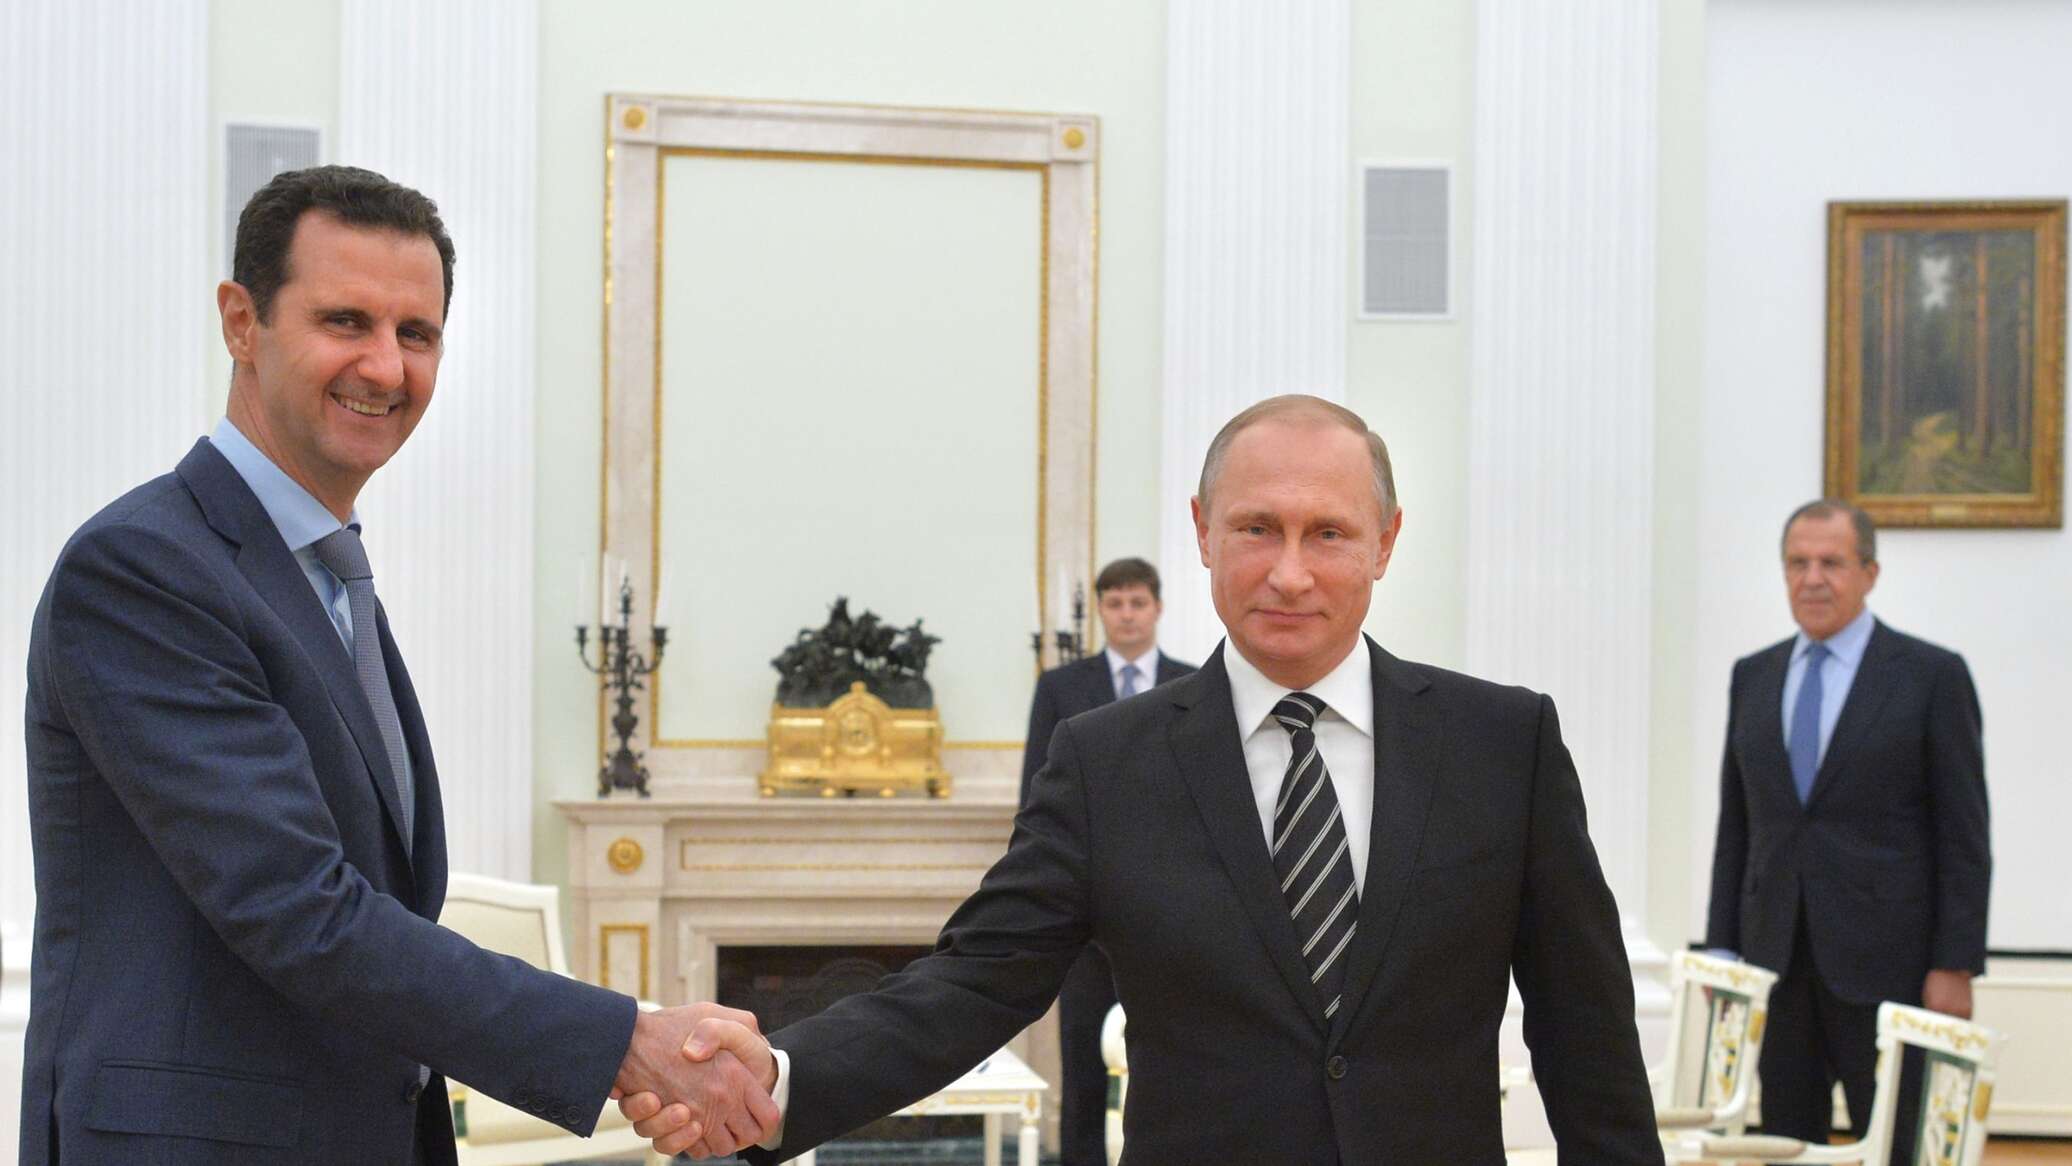 خبير لـ"سبوتنيك" تعليقا على لقاء بوتين والأسد: التعاون الاقتصادي والتجاري على قائمة الأولويات